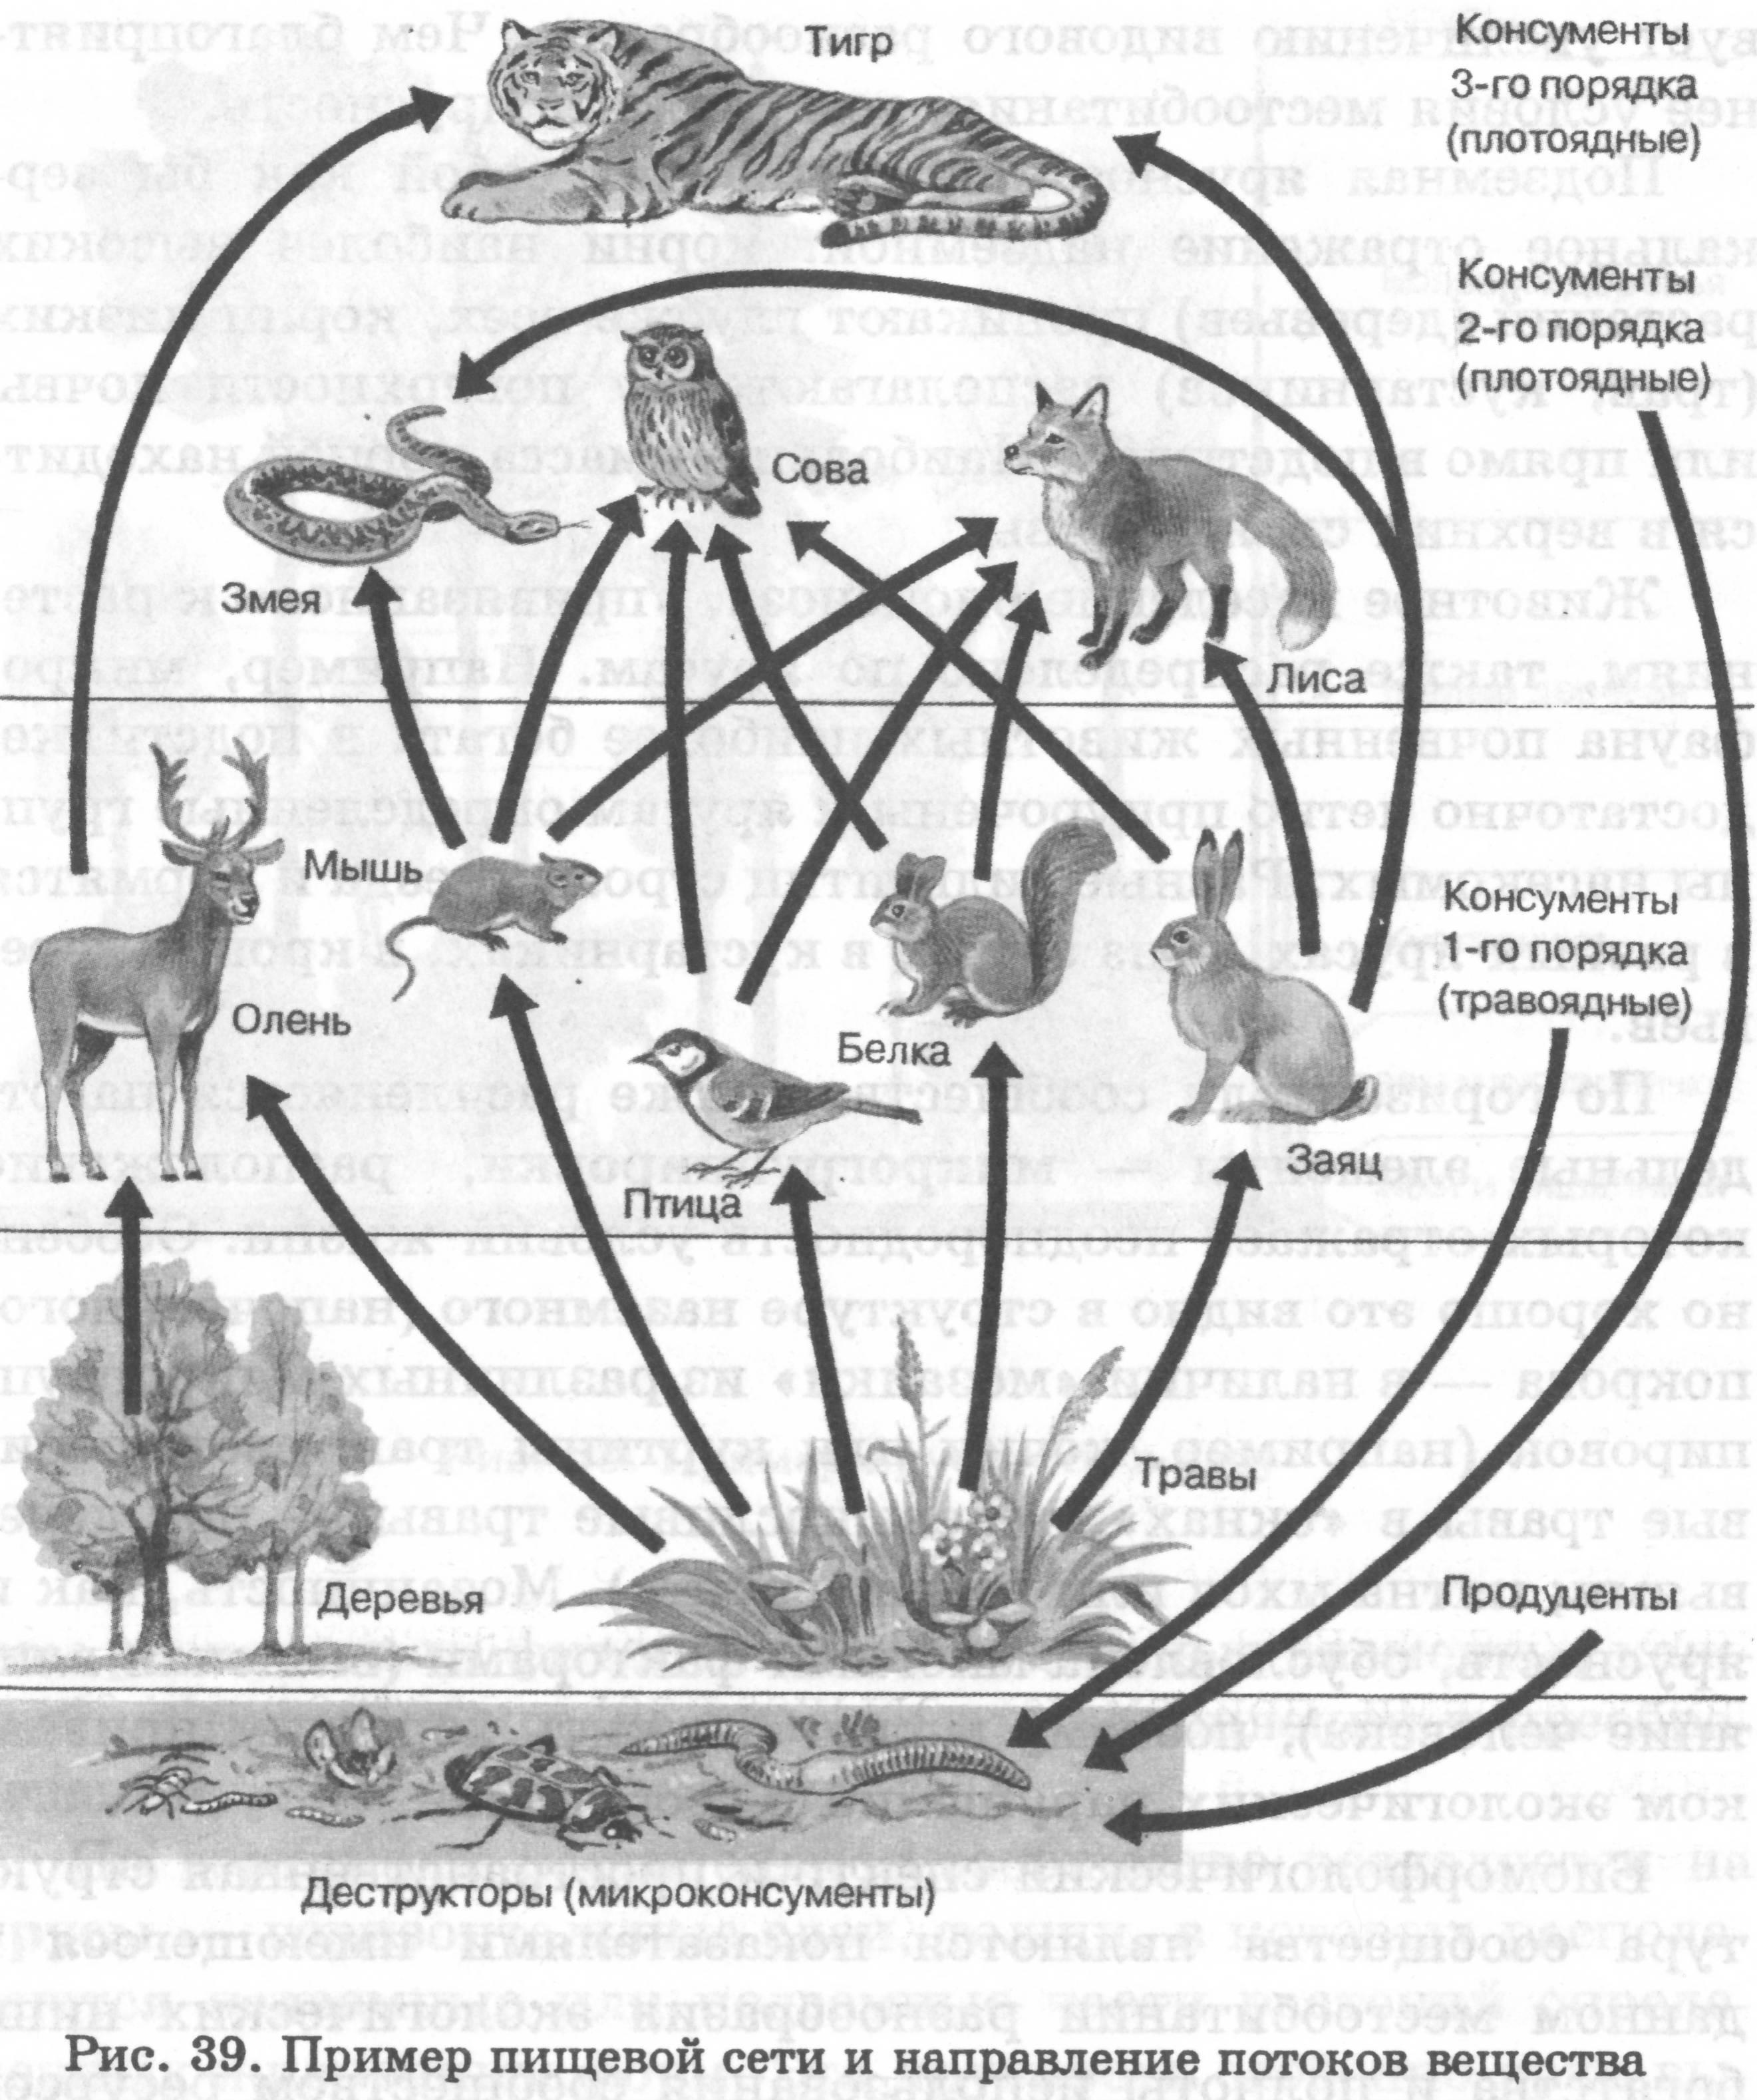 Волк консумент какого порядка. Консумент 3 порядка в биоценозе. Пищевая сеть и направление потоков вещества. Схема консументов. Пищевая сеть леса.